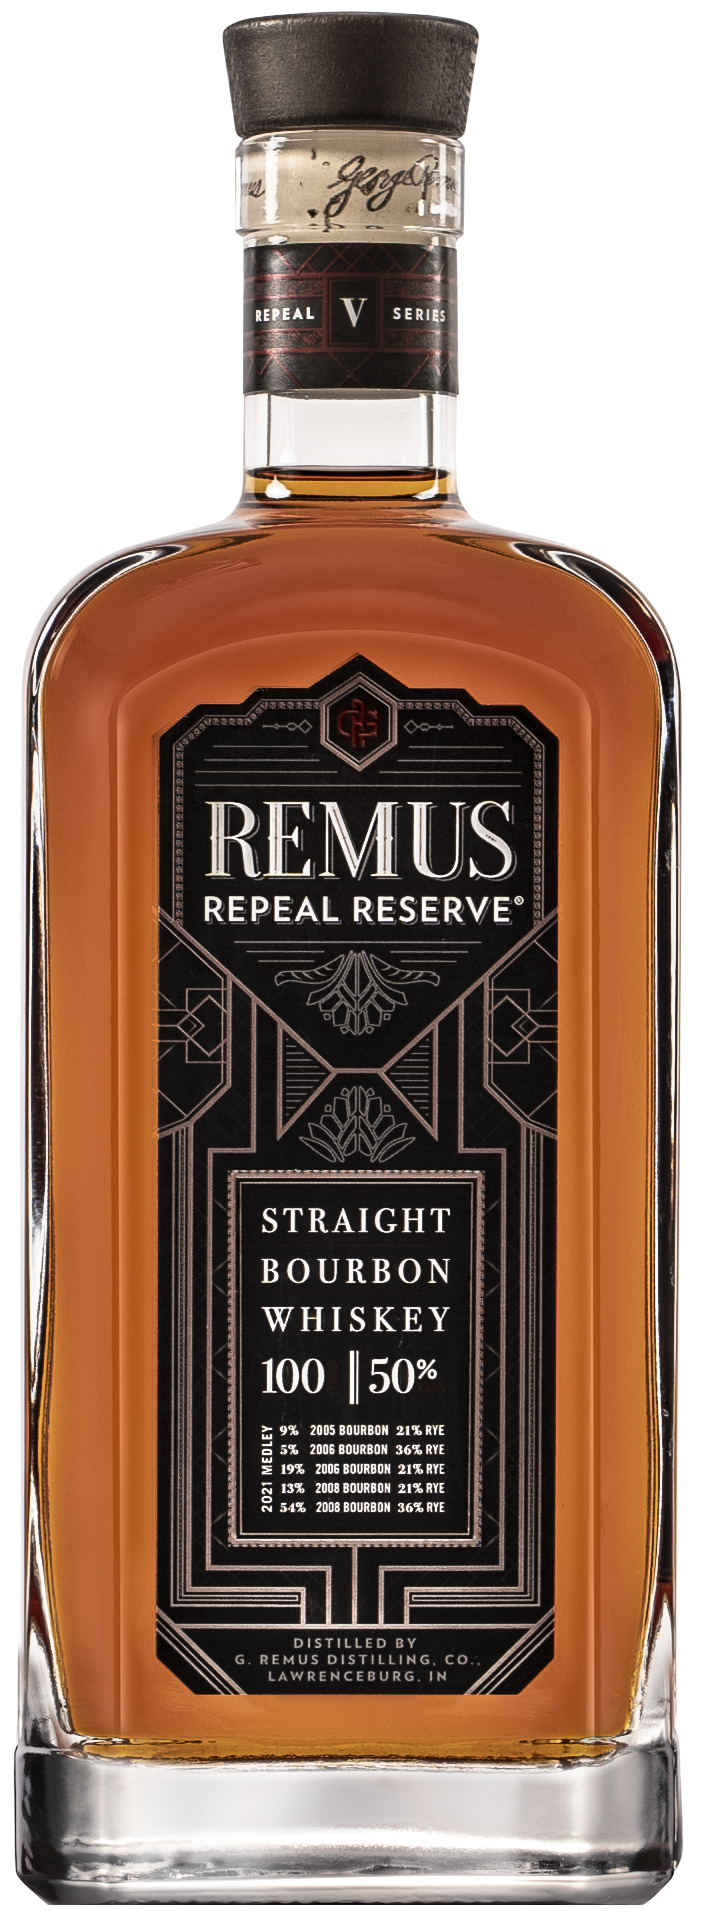 Remus RRRV Bottle Photo